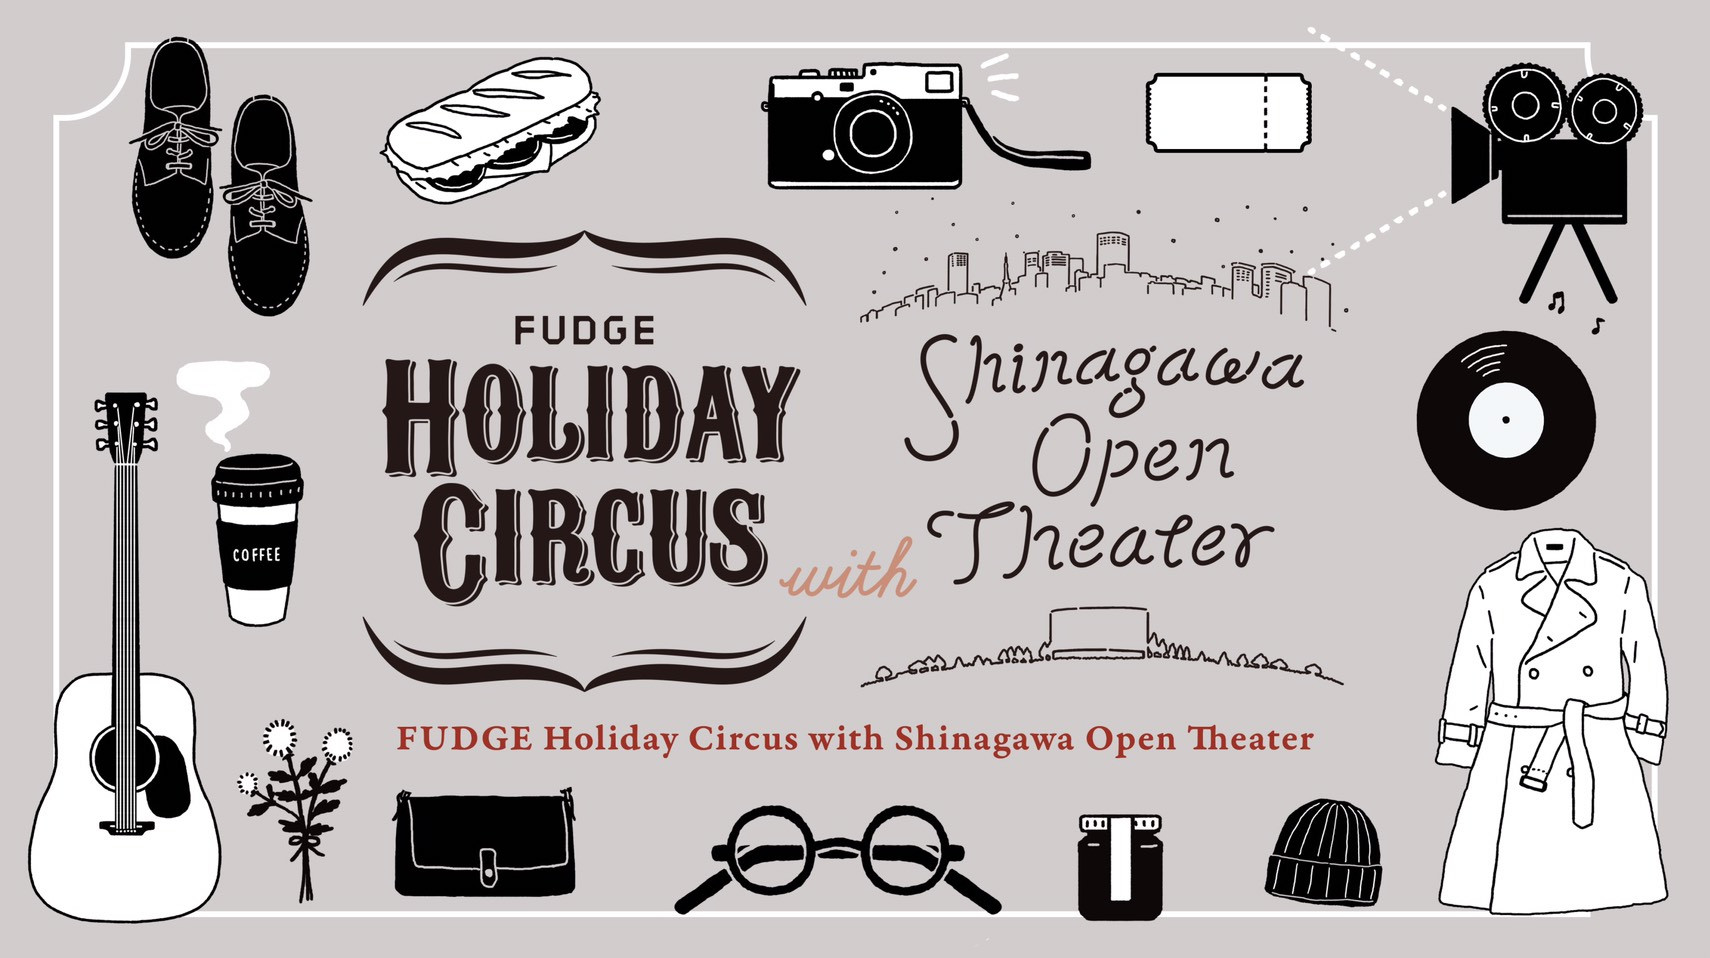 オープンシアターやライブにマルシェ! 雑誌『FUDGE』による2日間のイベント